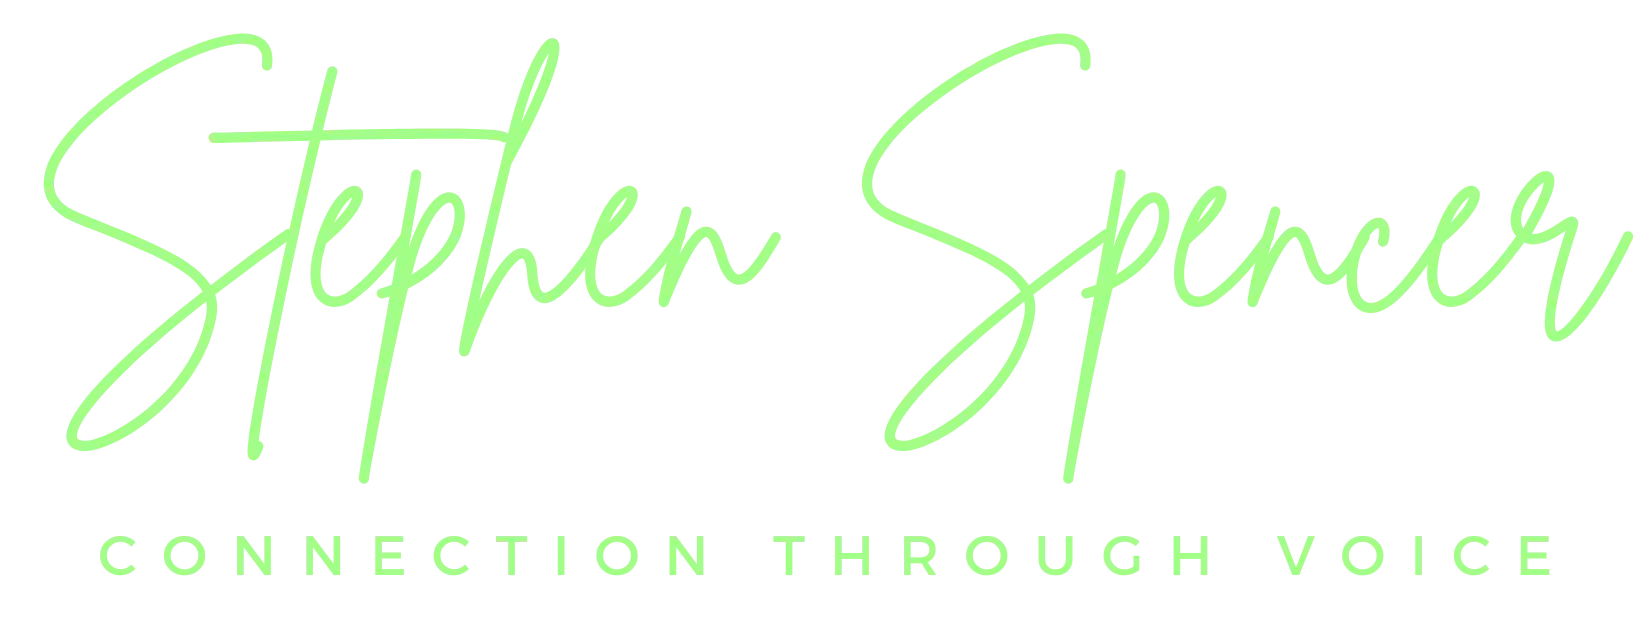 stephen spencer logo a2ff86